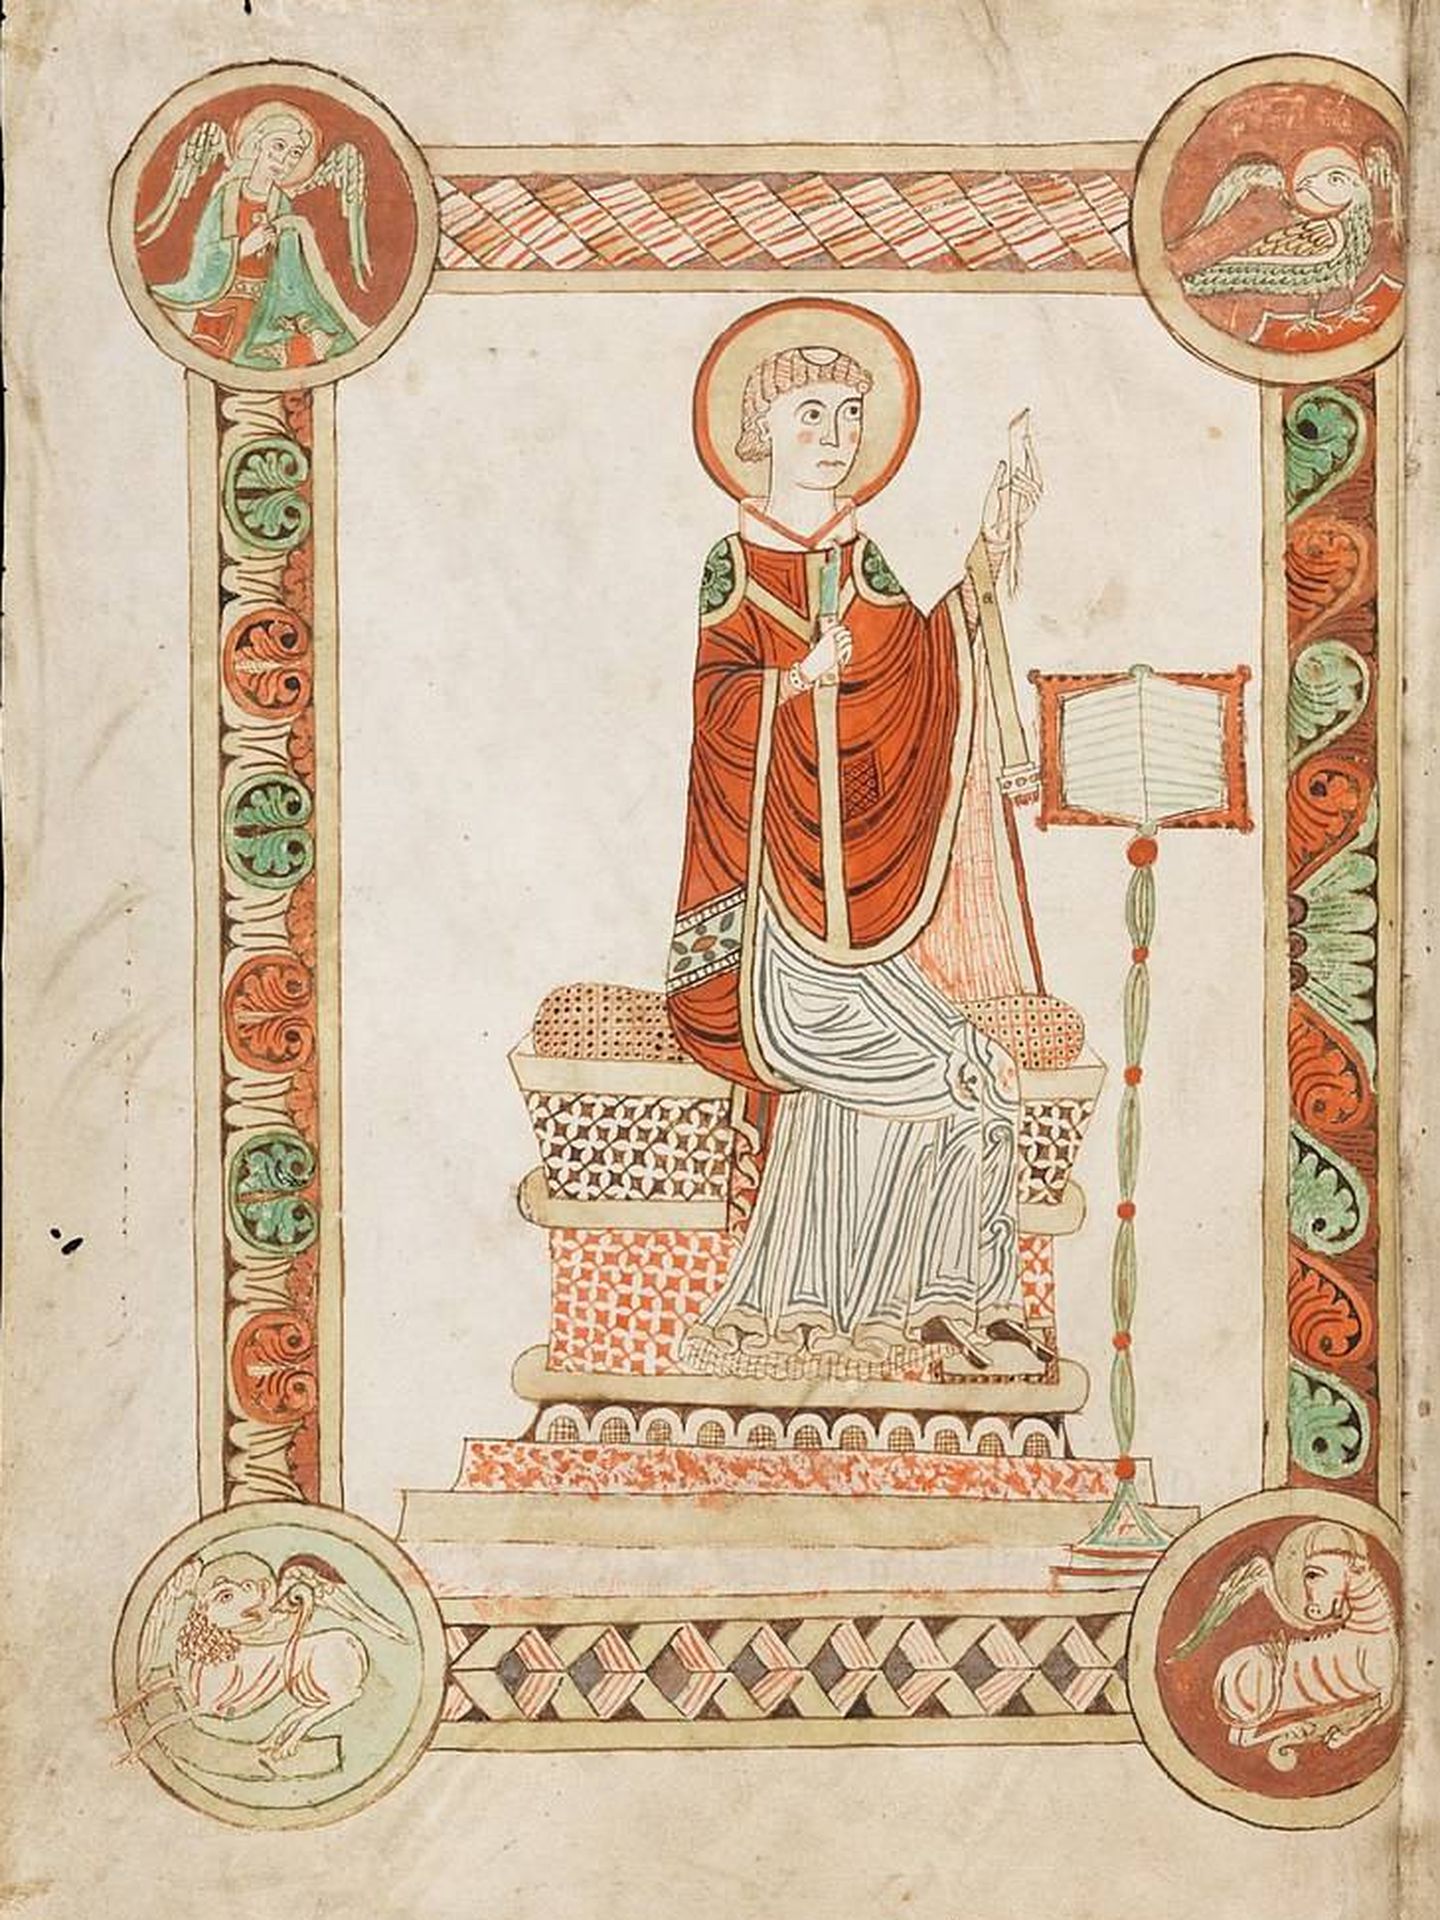 Beda escribiendo la Historia eclesiástica del pueblo inglés, ilustración de un códice en la abadía de Engelberg en Suiza. (CC)